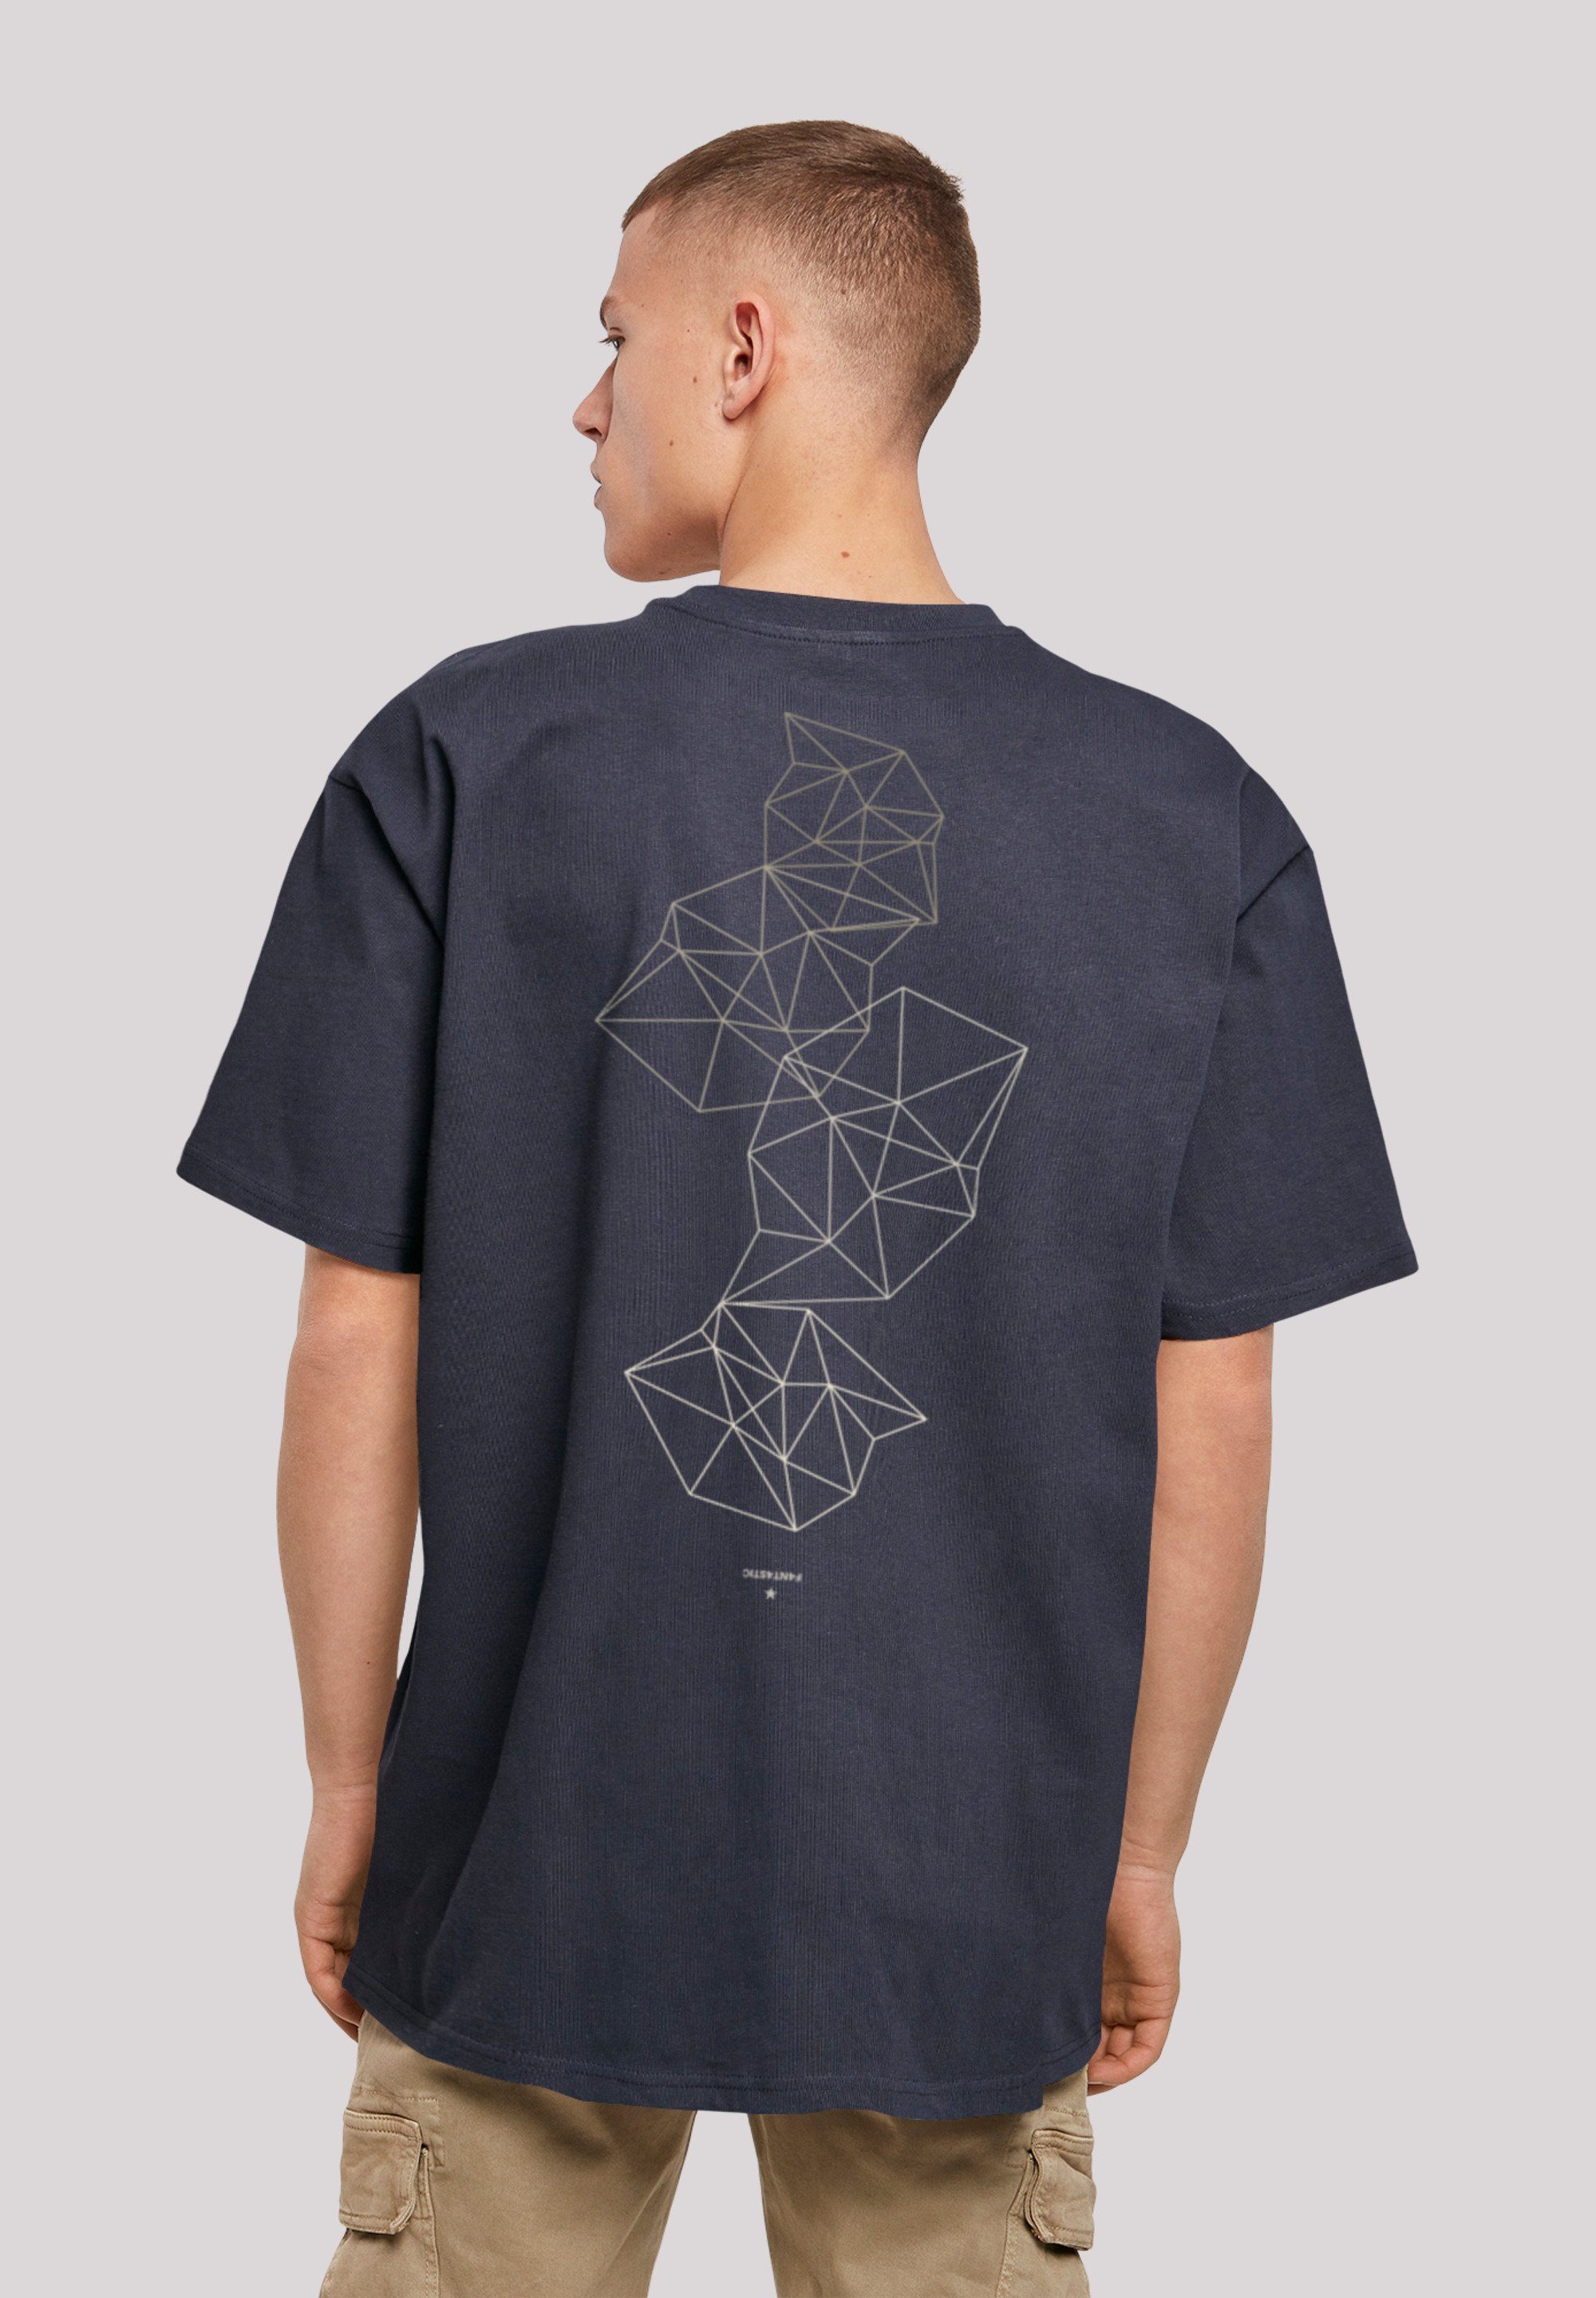 Geometric Print Abstract navy T-Shirt F4NT4STIC